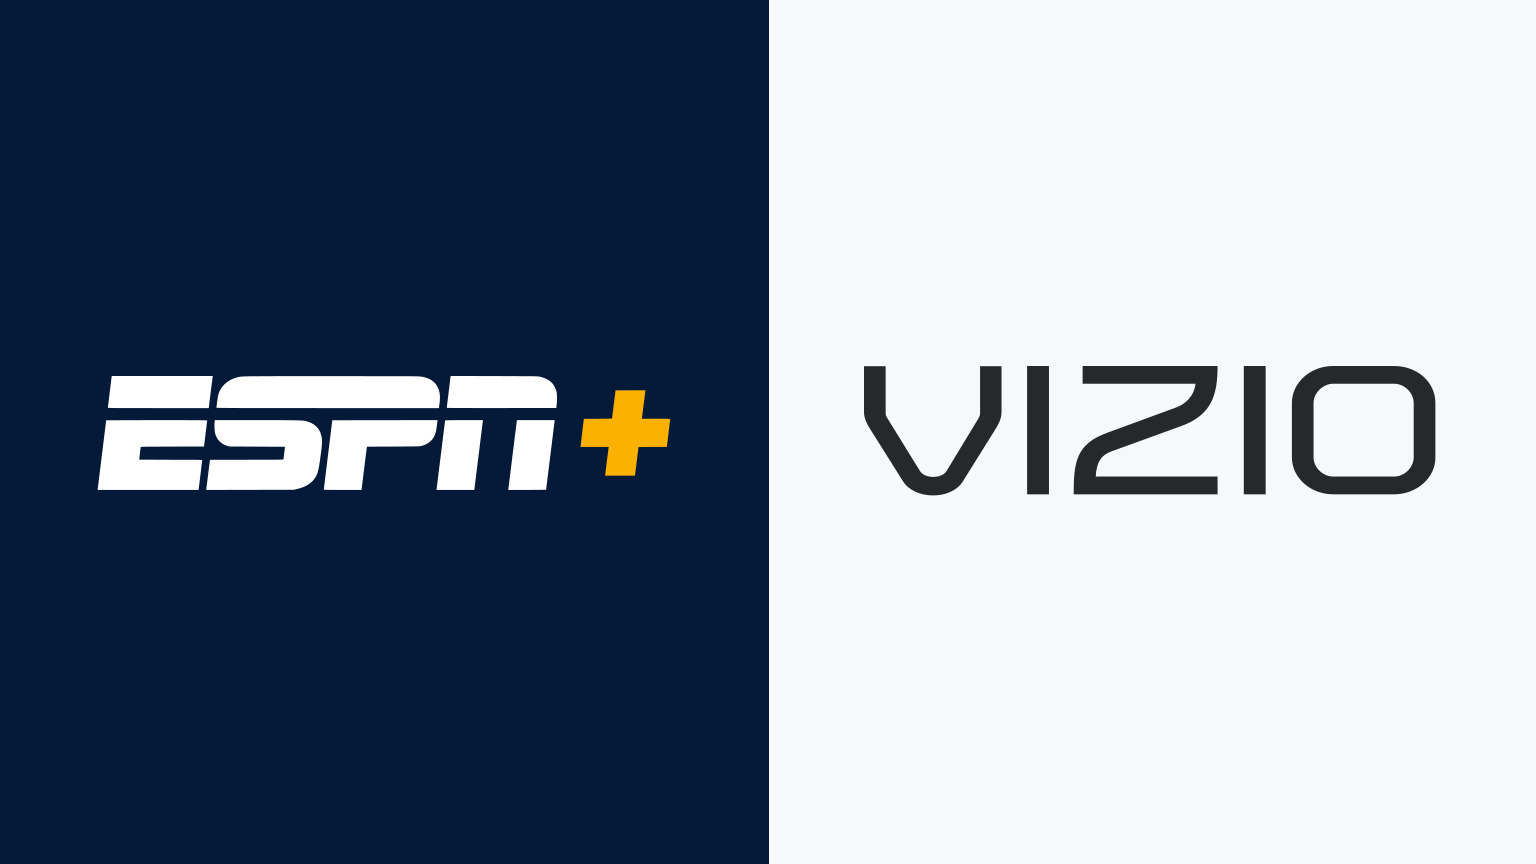 How To Download ESPN App On Vizio Smart TV